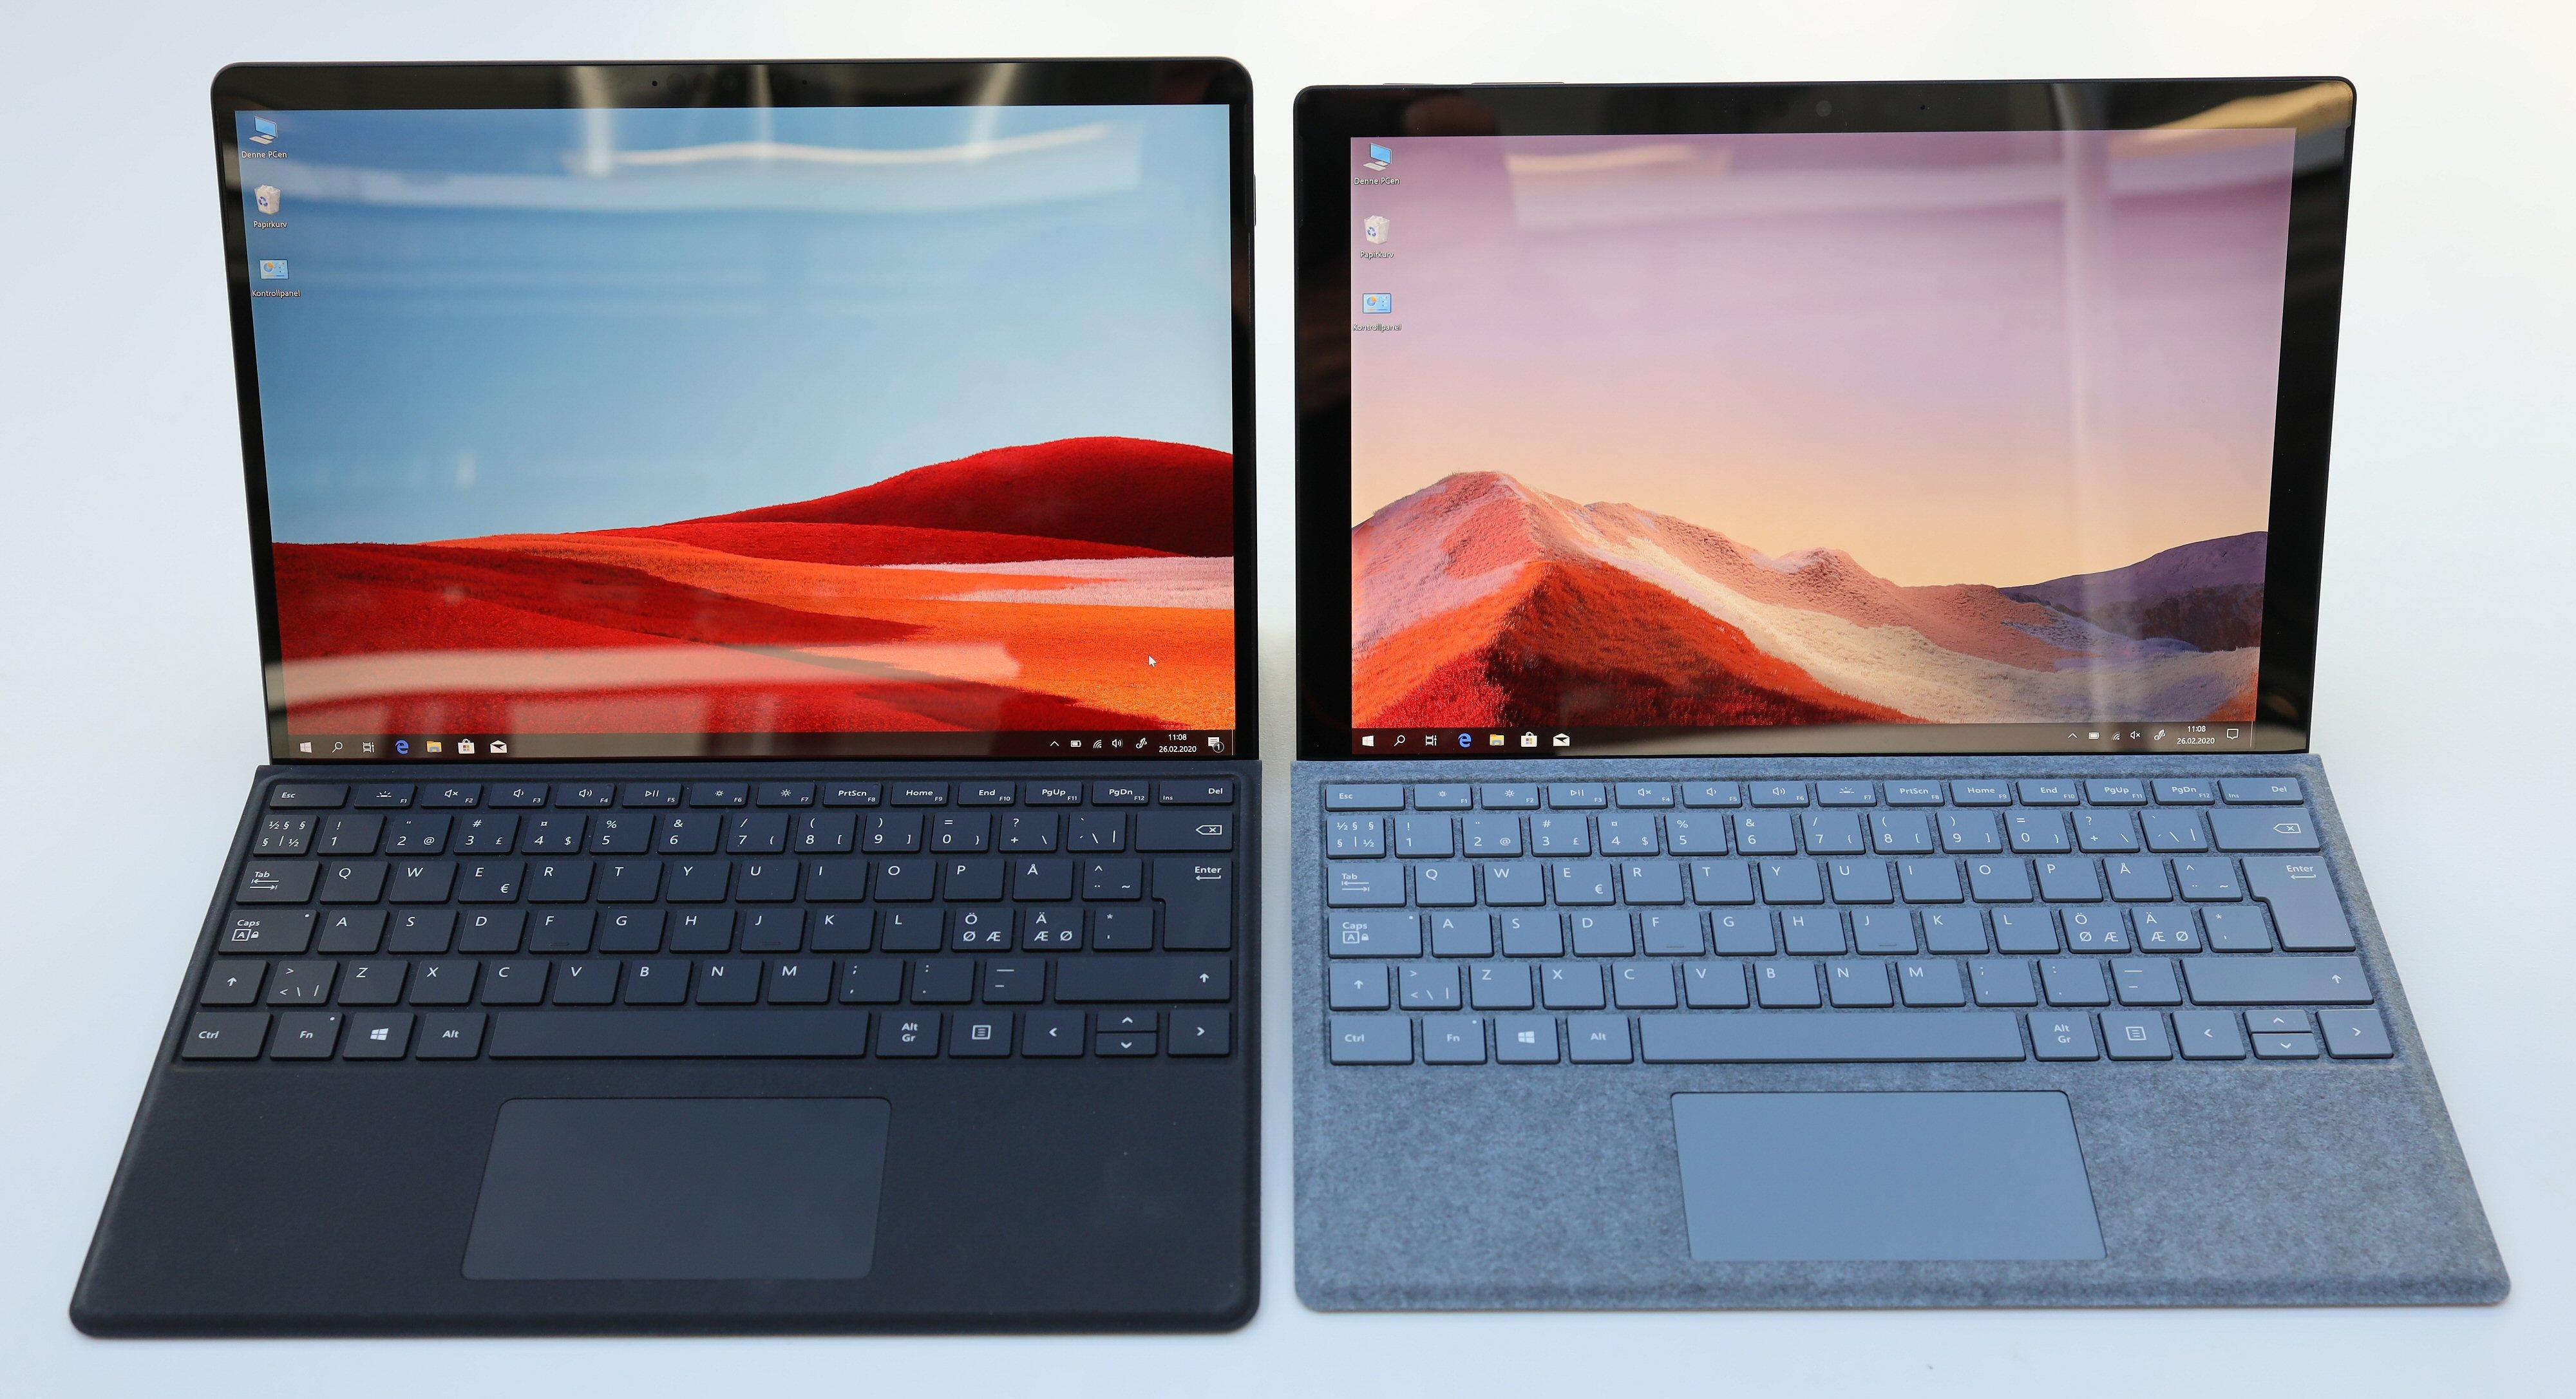 Surface Pro X ved siden av Surface Pro 7. X-modellen er litt rundere i kantene, har integrert mobilt bredbånd og en litt større skjerm på 13 tommer, men egner seg mindre som en allround datamaskin.